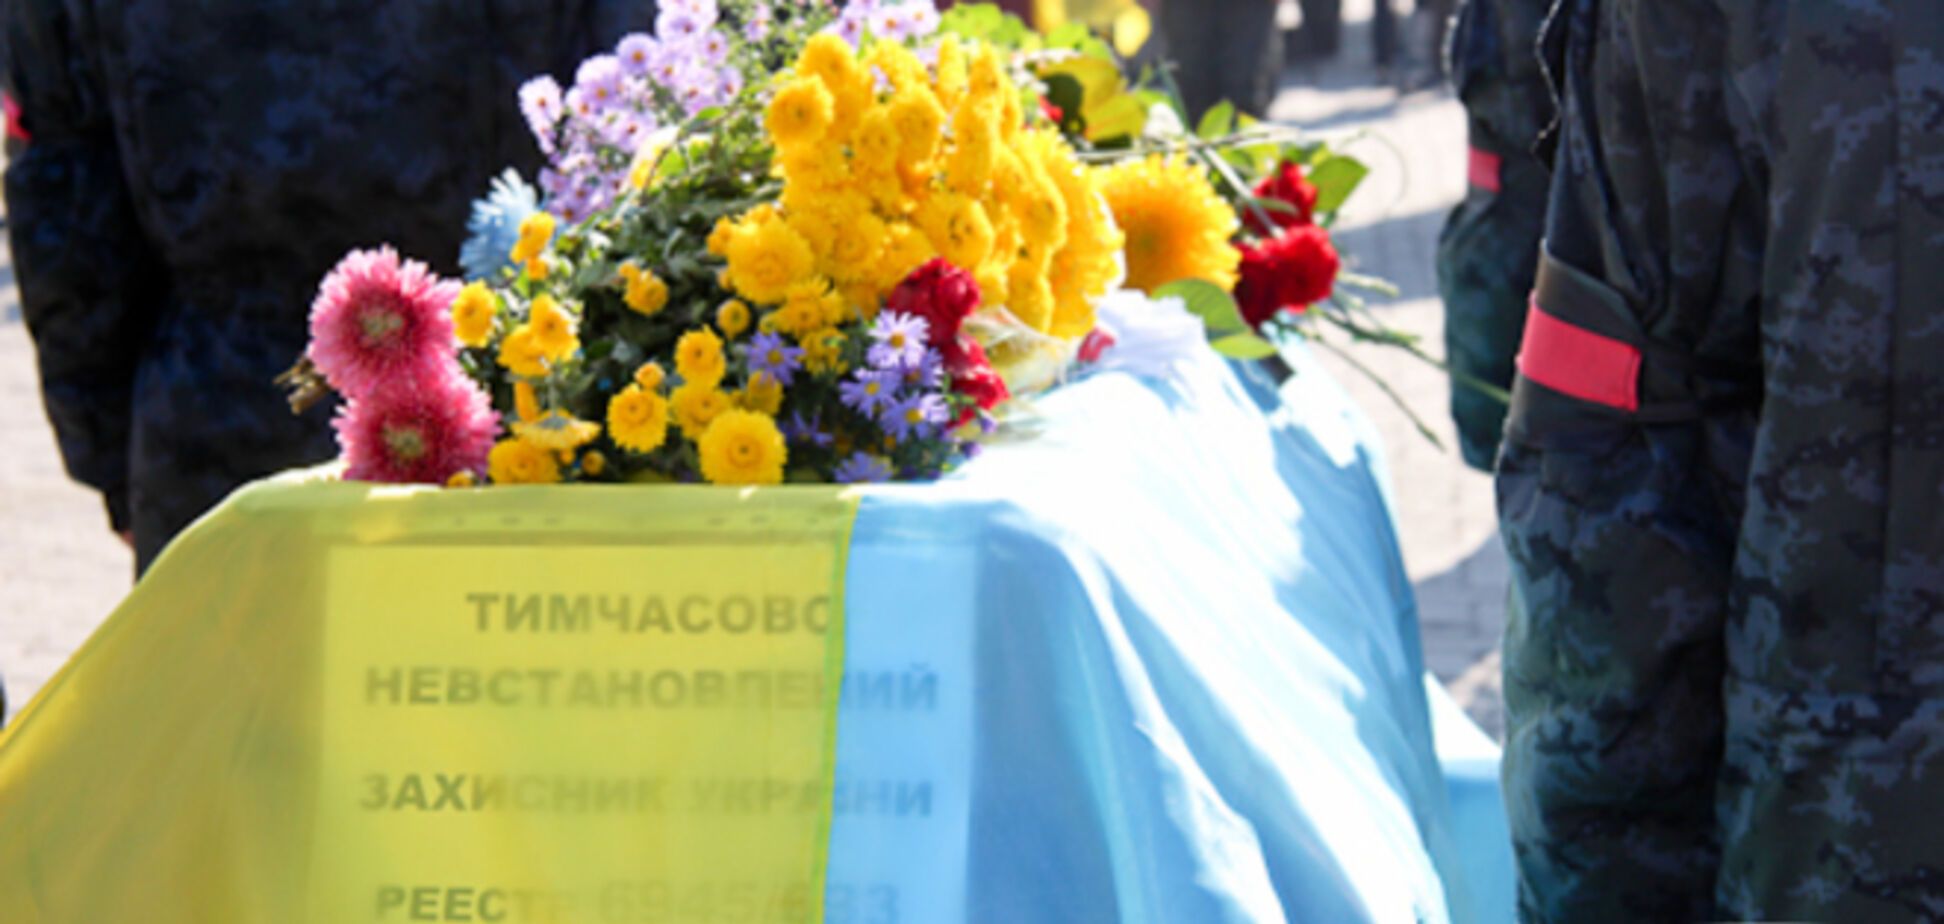 Жители Днепропетровска похоронили 21 неопознанного украинского бойца. Опубликованы фото